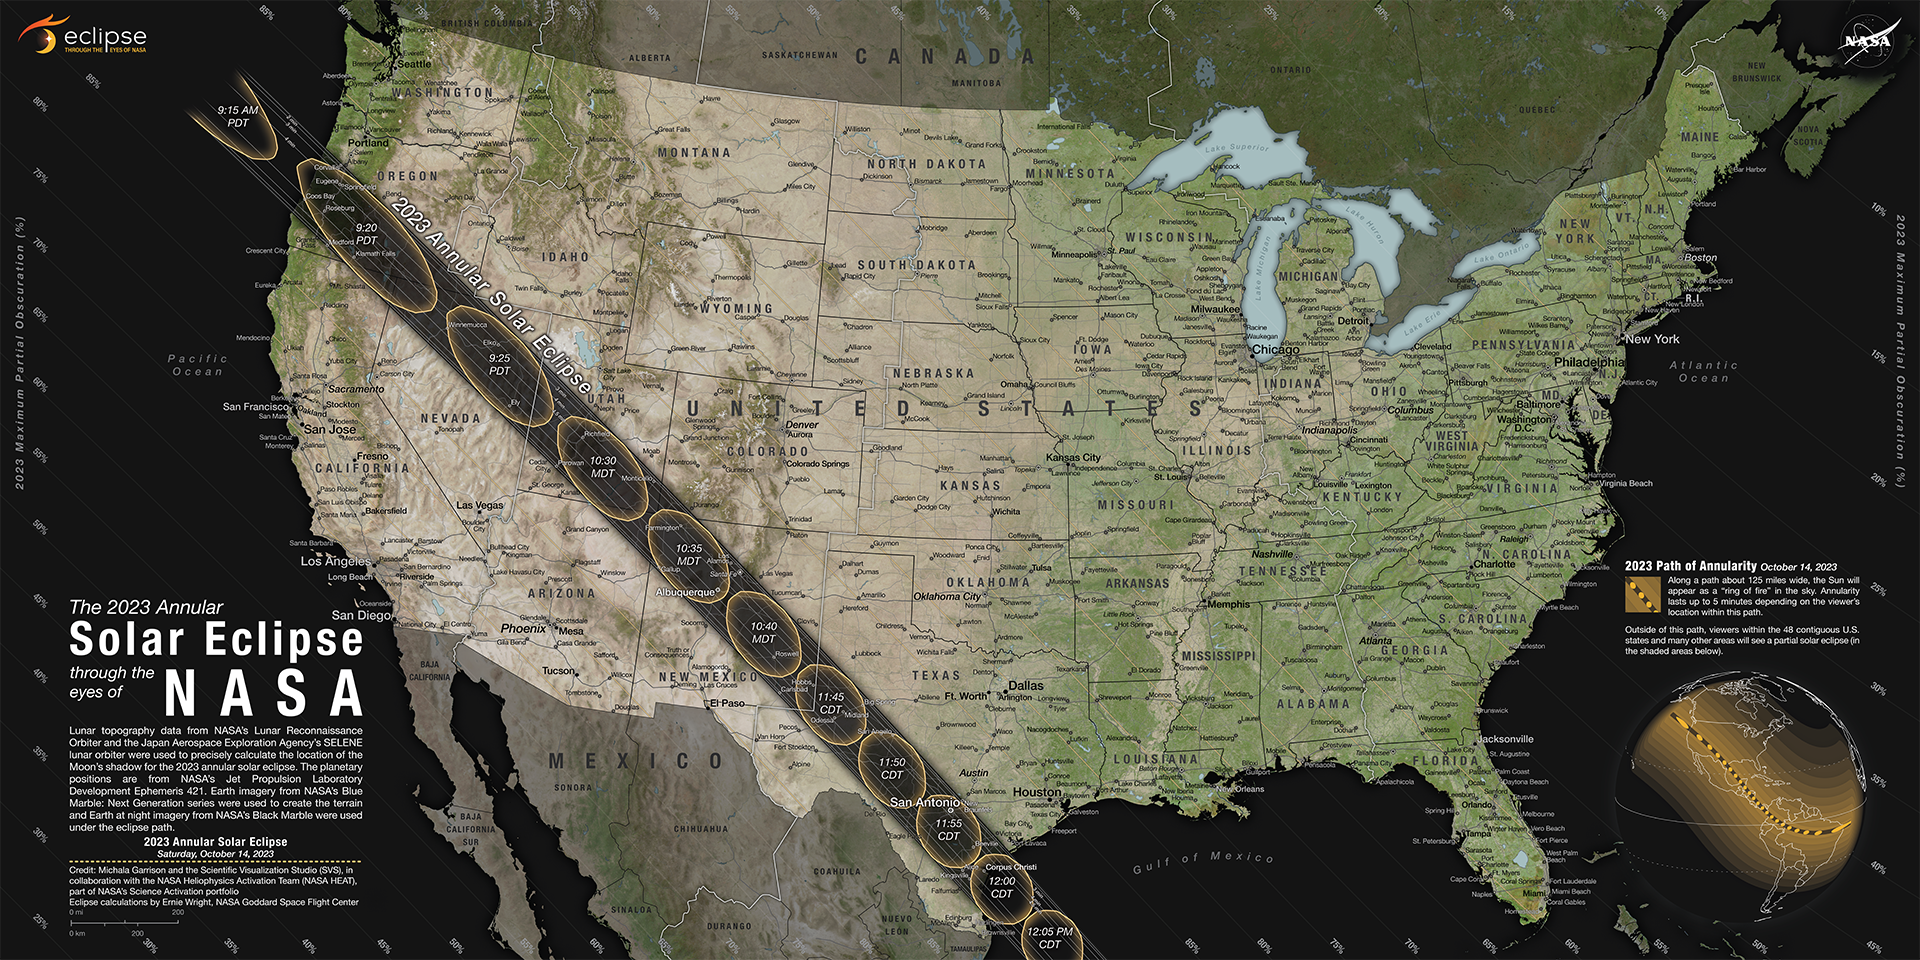 percorsi dell'ombra della Luna attraverso gli Stati Uniti durante l'eclissi solare anulare del 14 ottobre